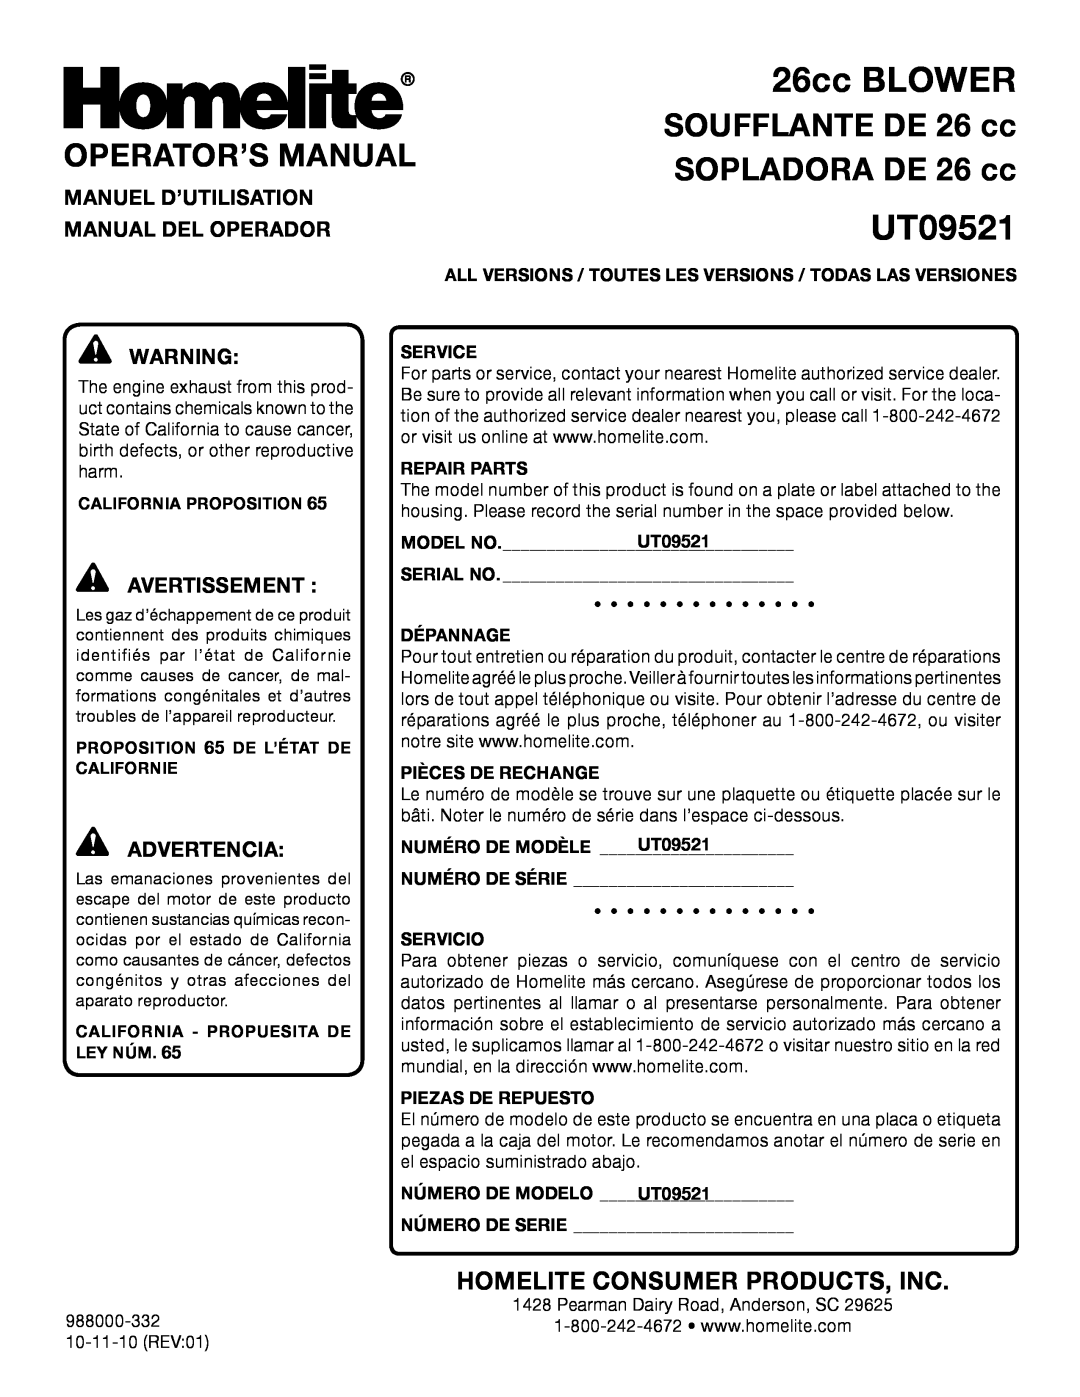 Homelite UT09521 Operator’S Manual, SOPLADORA DE 26 cc, SOUFFLANTE DE 26 cc, Manuel D’Utilisation, Manual Del Operador 